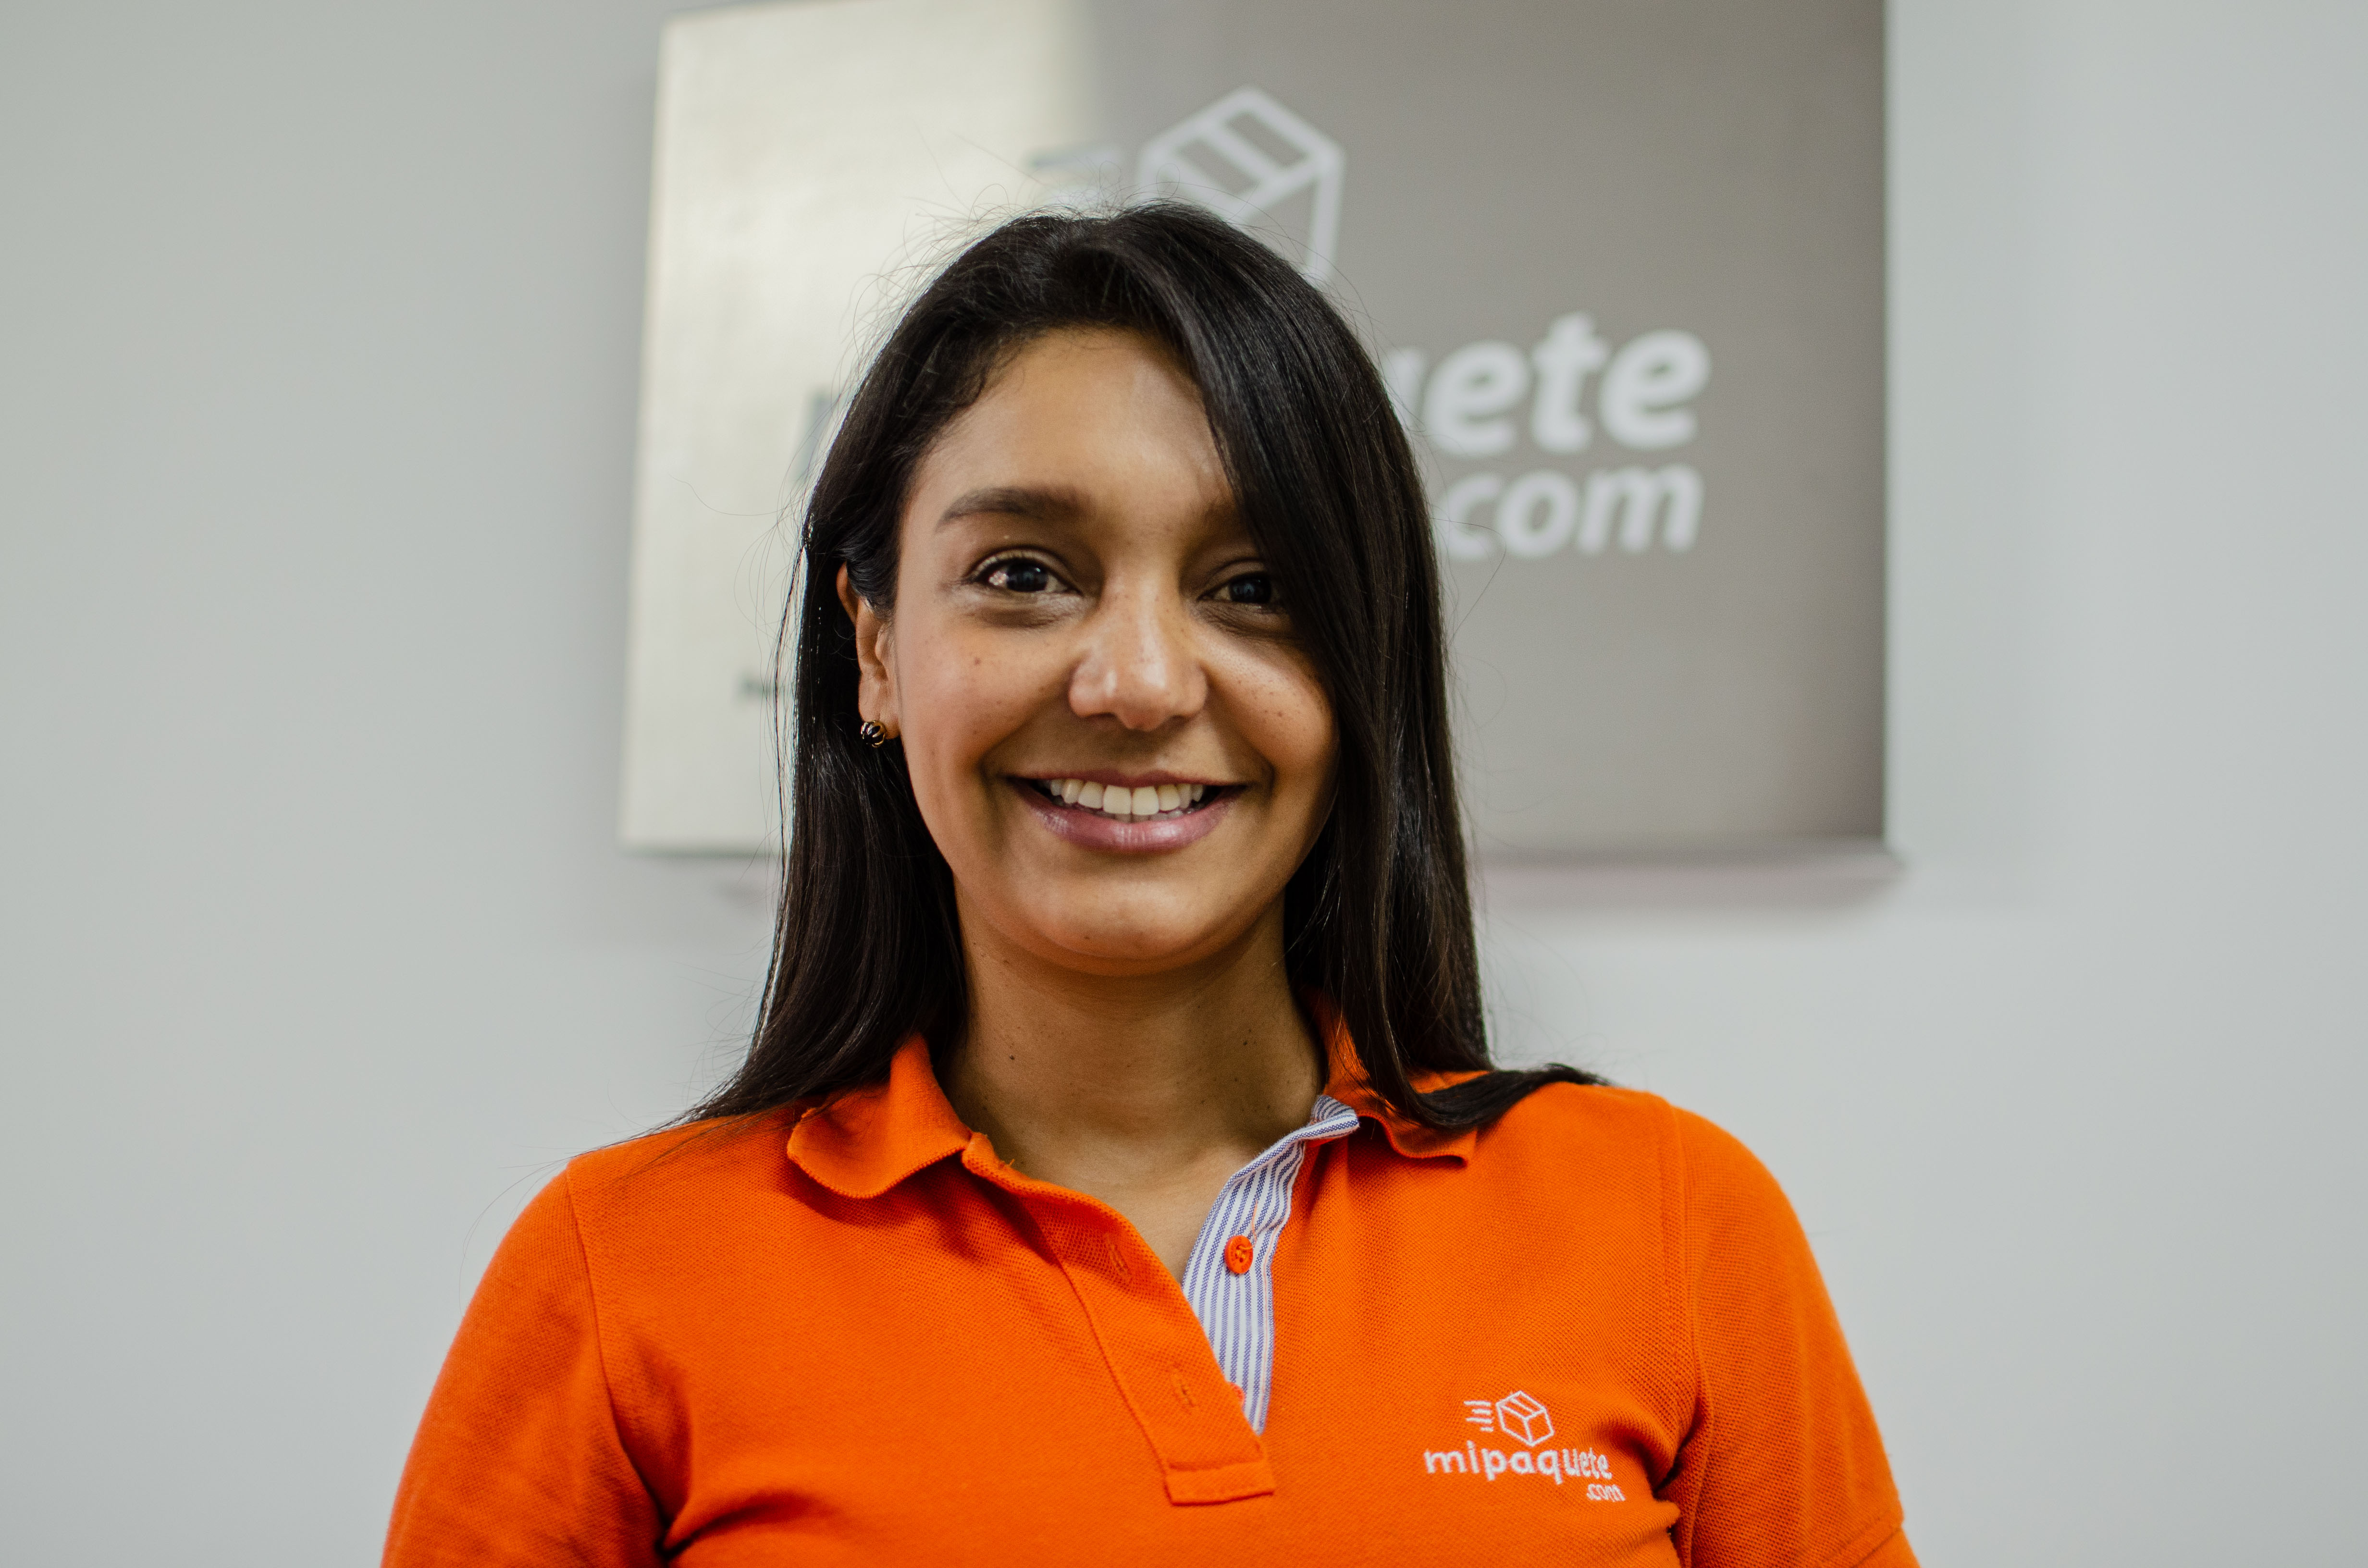 Carolina Ruiz Soto es una Ingeniera Industrial, académica y experta en Block Chain que aplicó todo este conocimiento en la creación de mipaquete.com. Como cofundadora y CEO de la plataforma usa la creatividad para adaptarla a los cambios del mercado.